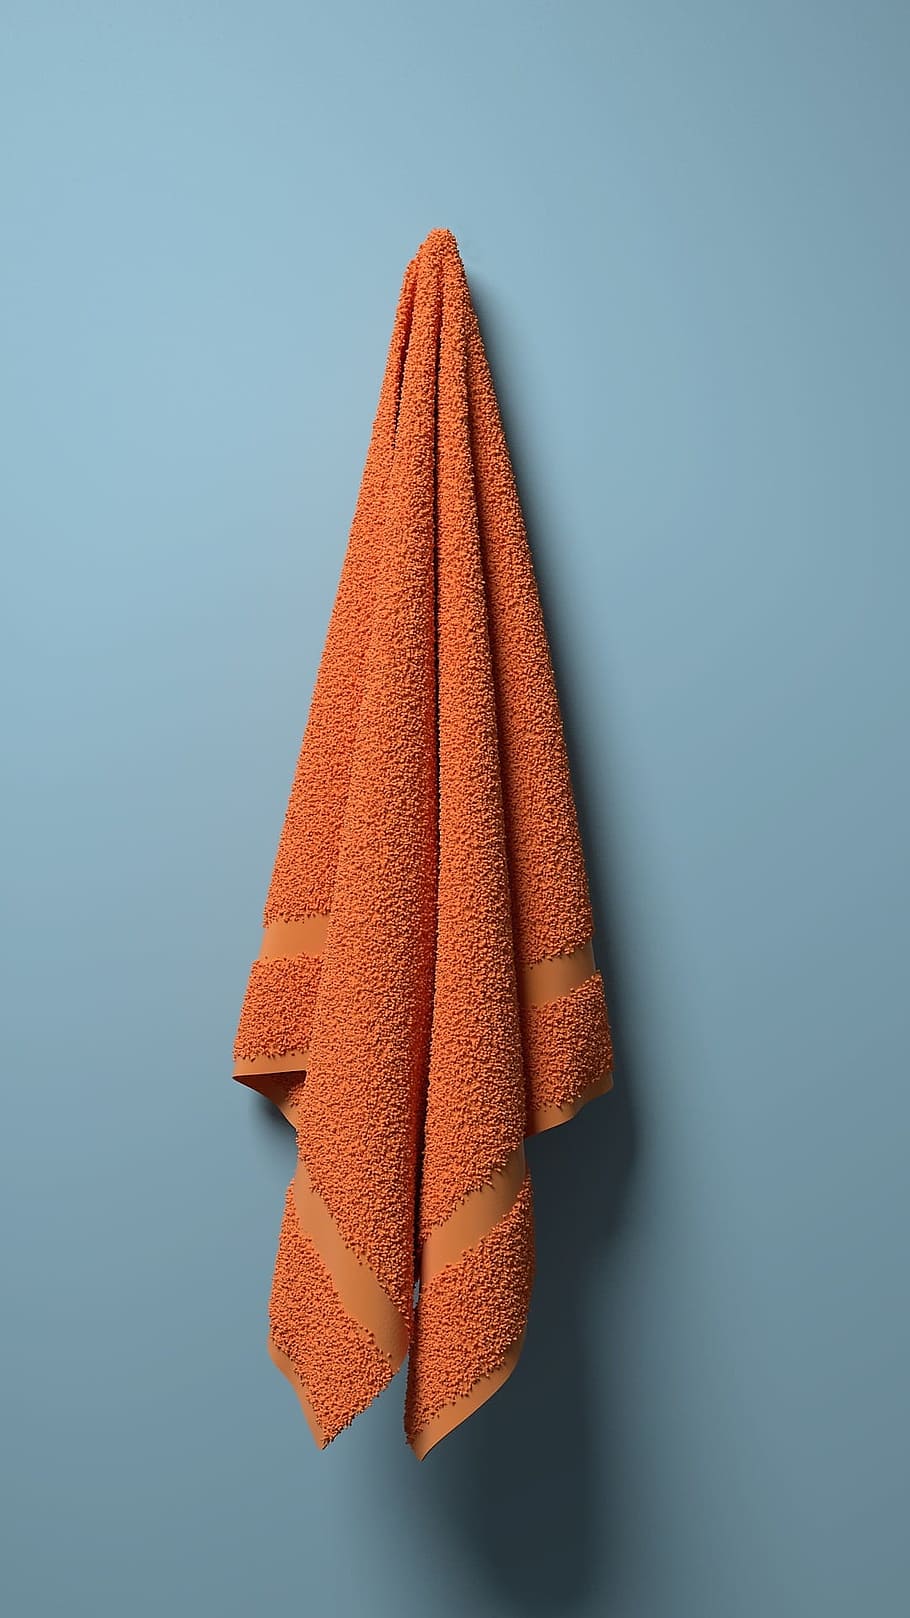 toalla, baño, limpio, nuevo, naranja, sencillo, tiro del estudio, en interiores, fondo de color, naturaleza muerta